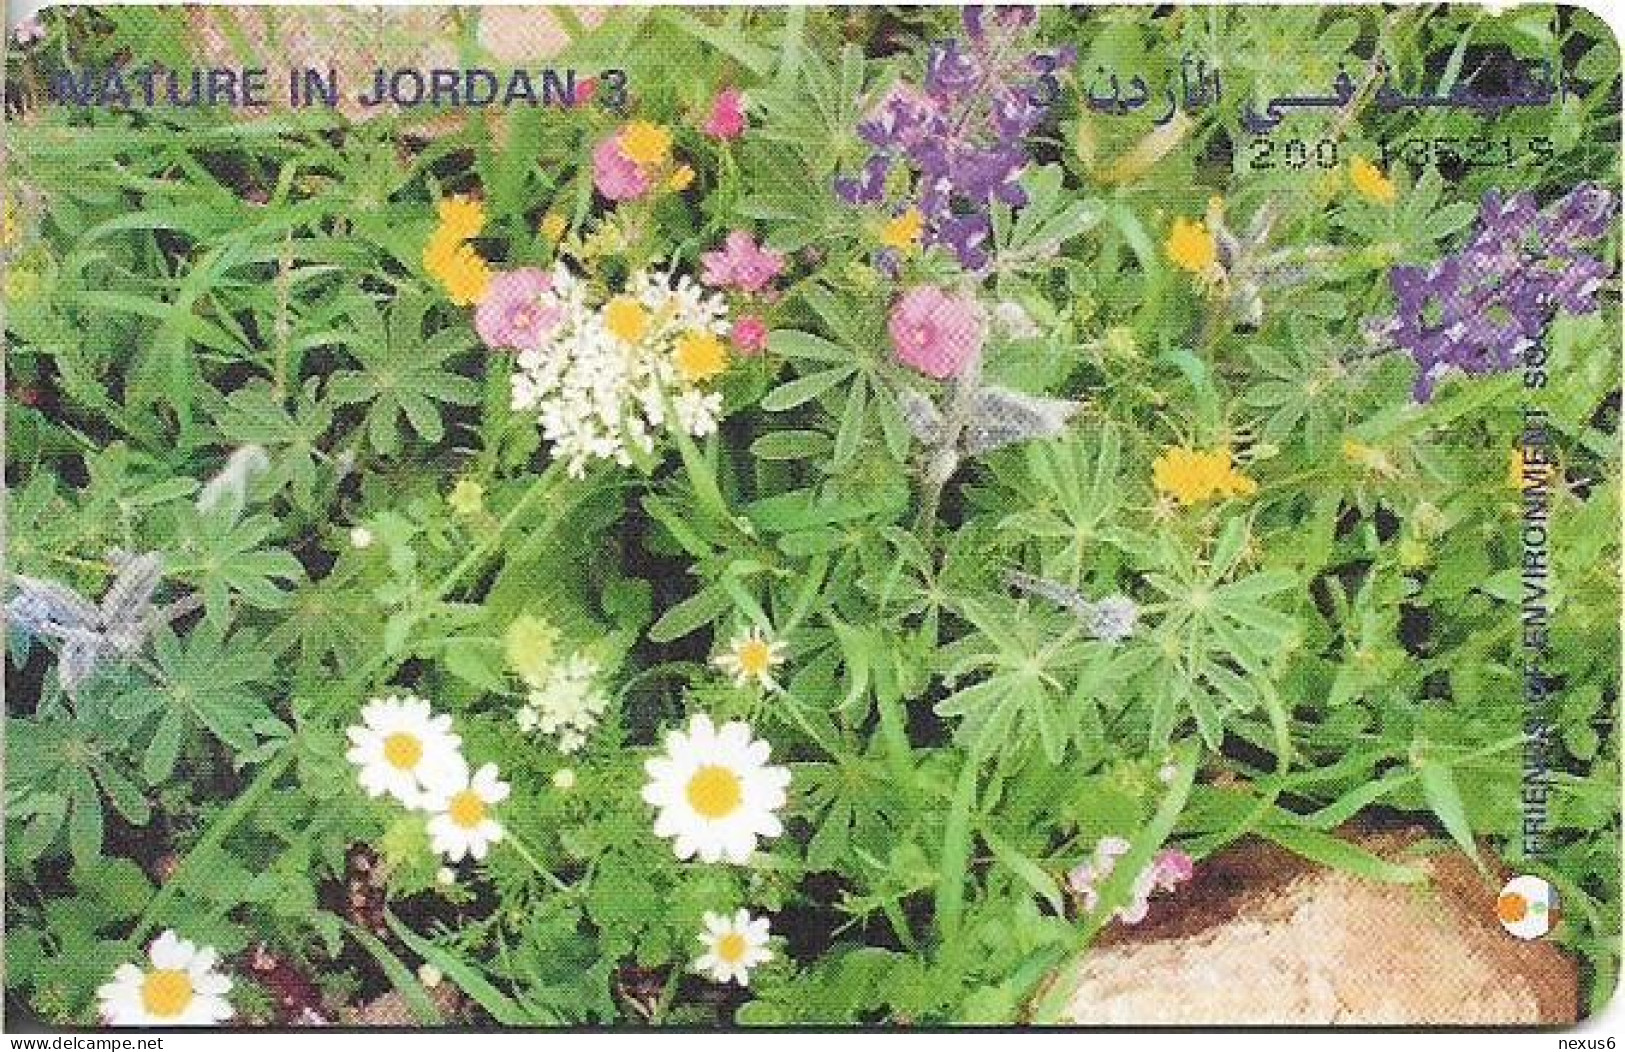 Jordan - Alo - Nature In Jordan 3, Flowers, 08.1998, 15JD, 40.000ex, Used - Jordan